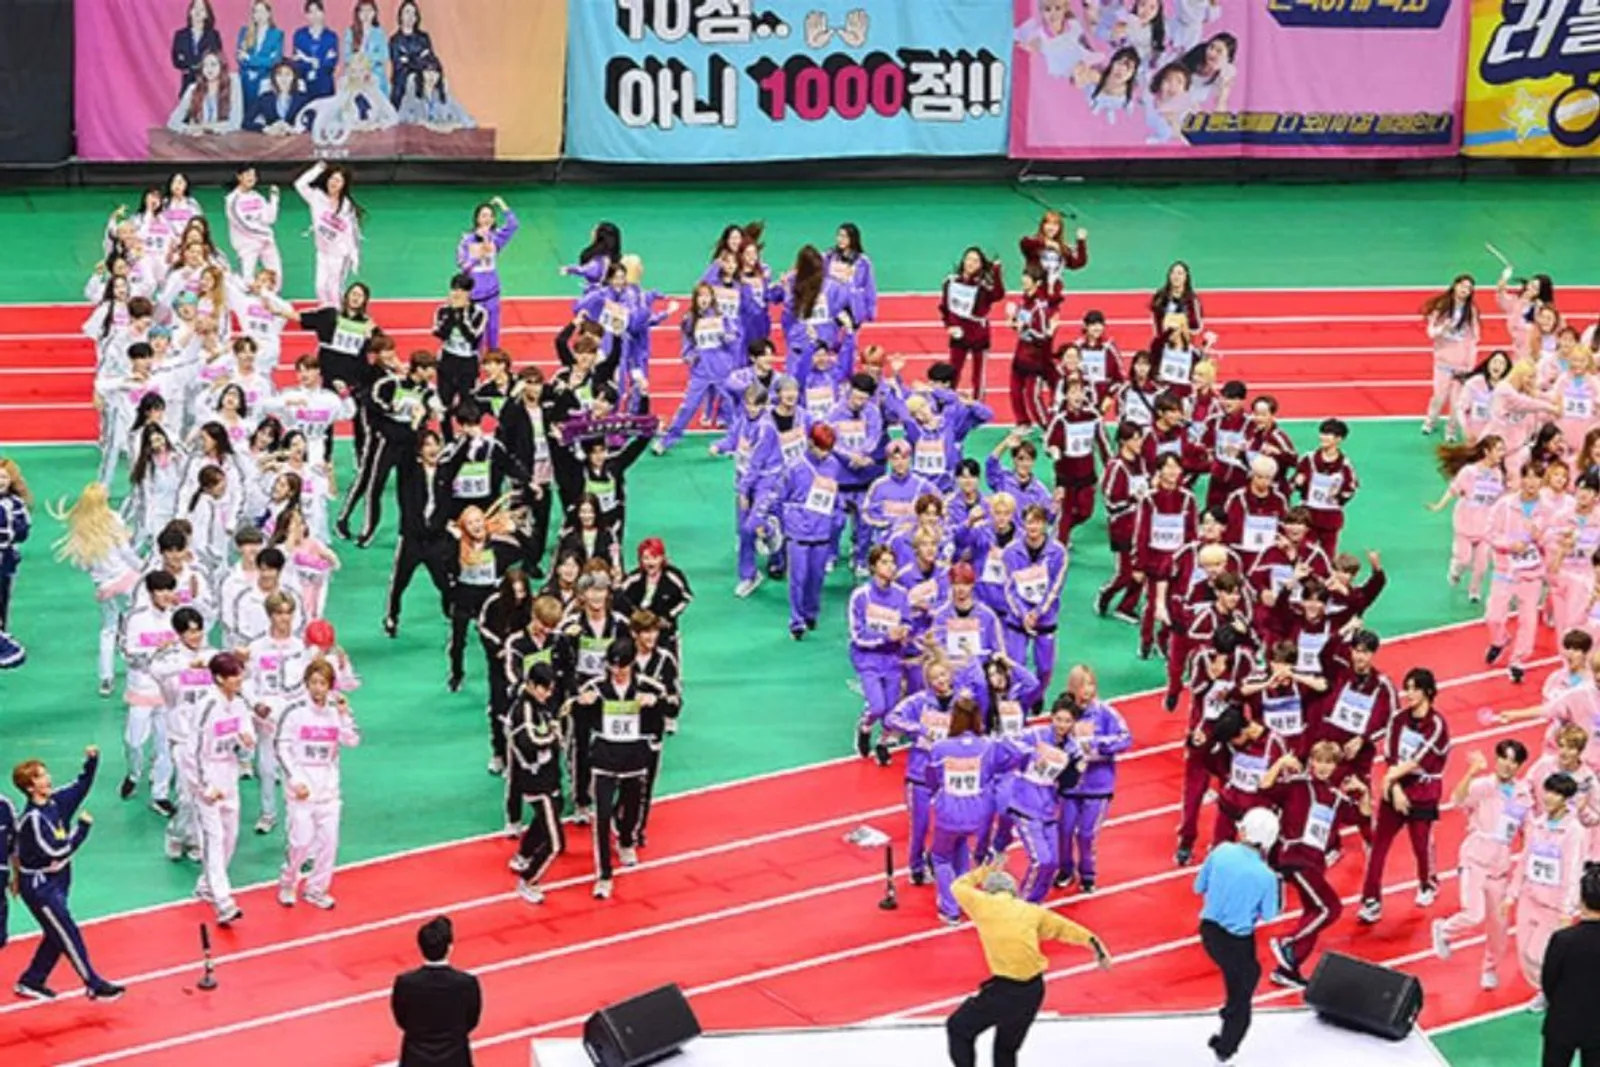 Ketahuan! Kompetisi Olahraga di Korea Jadi Ajang Kencan Para Artis 